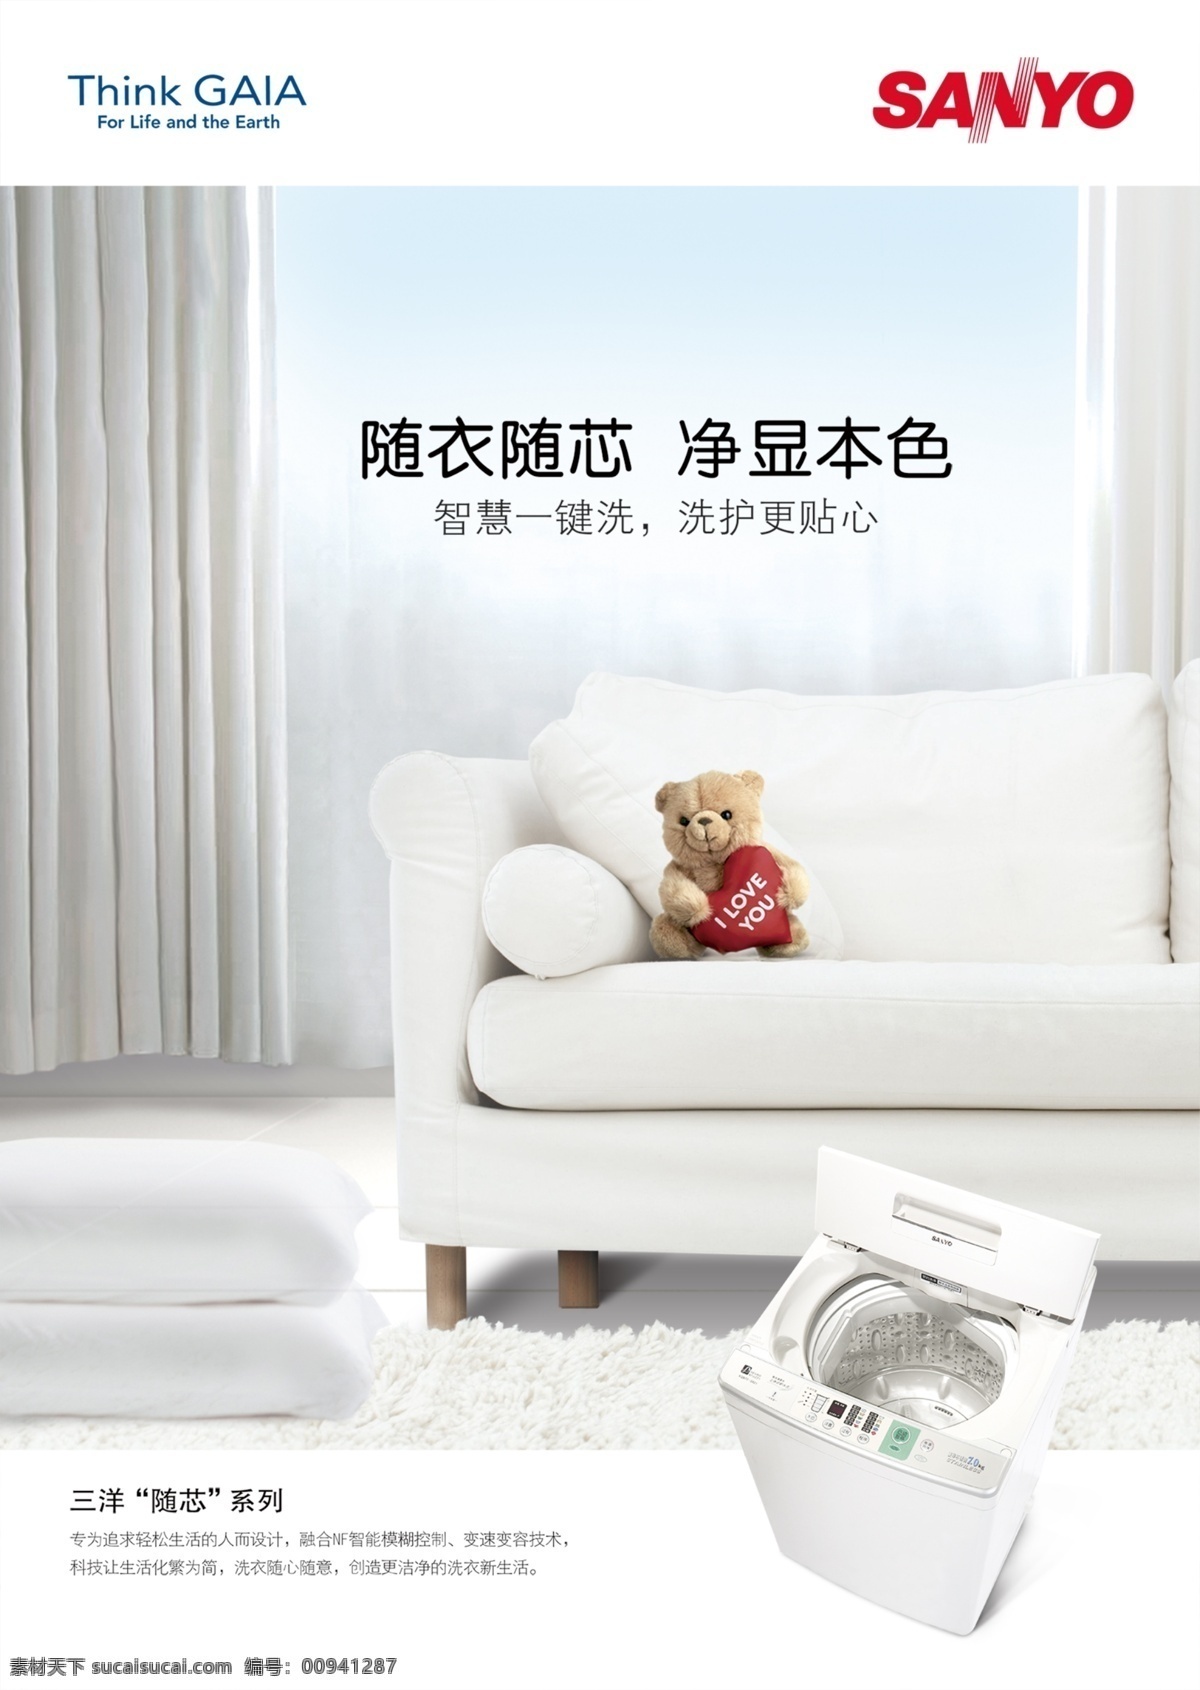 三洋 洗衣机 广告 　 沙发 小 熊 生活 psd源文件